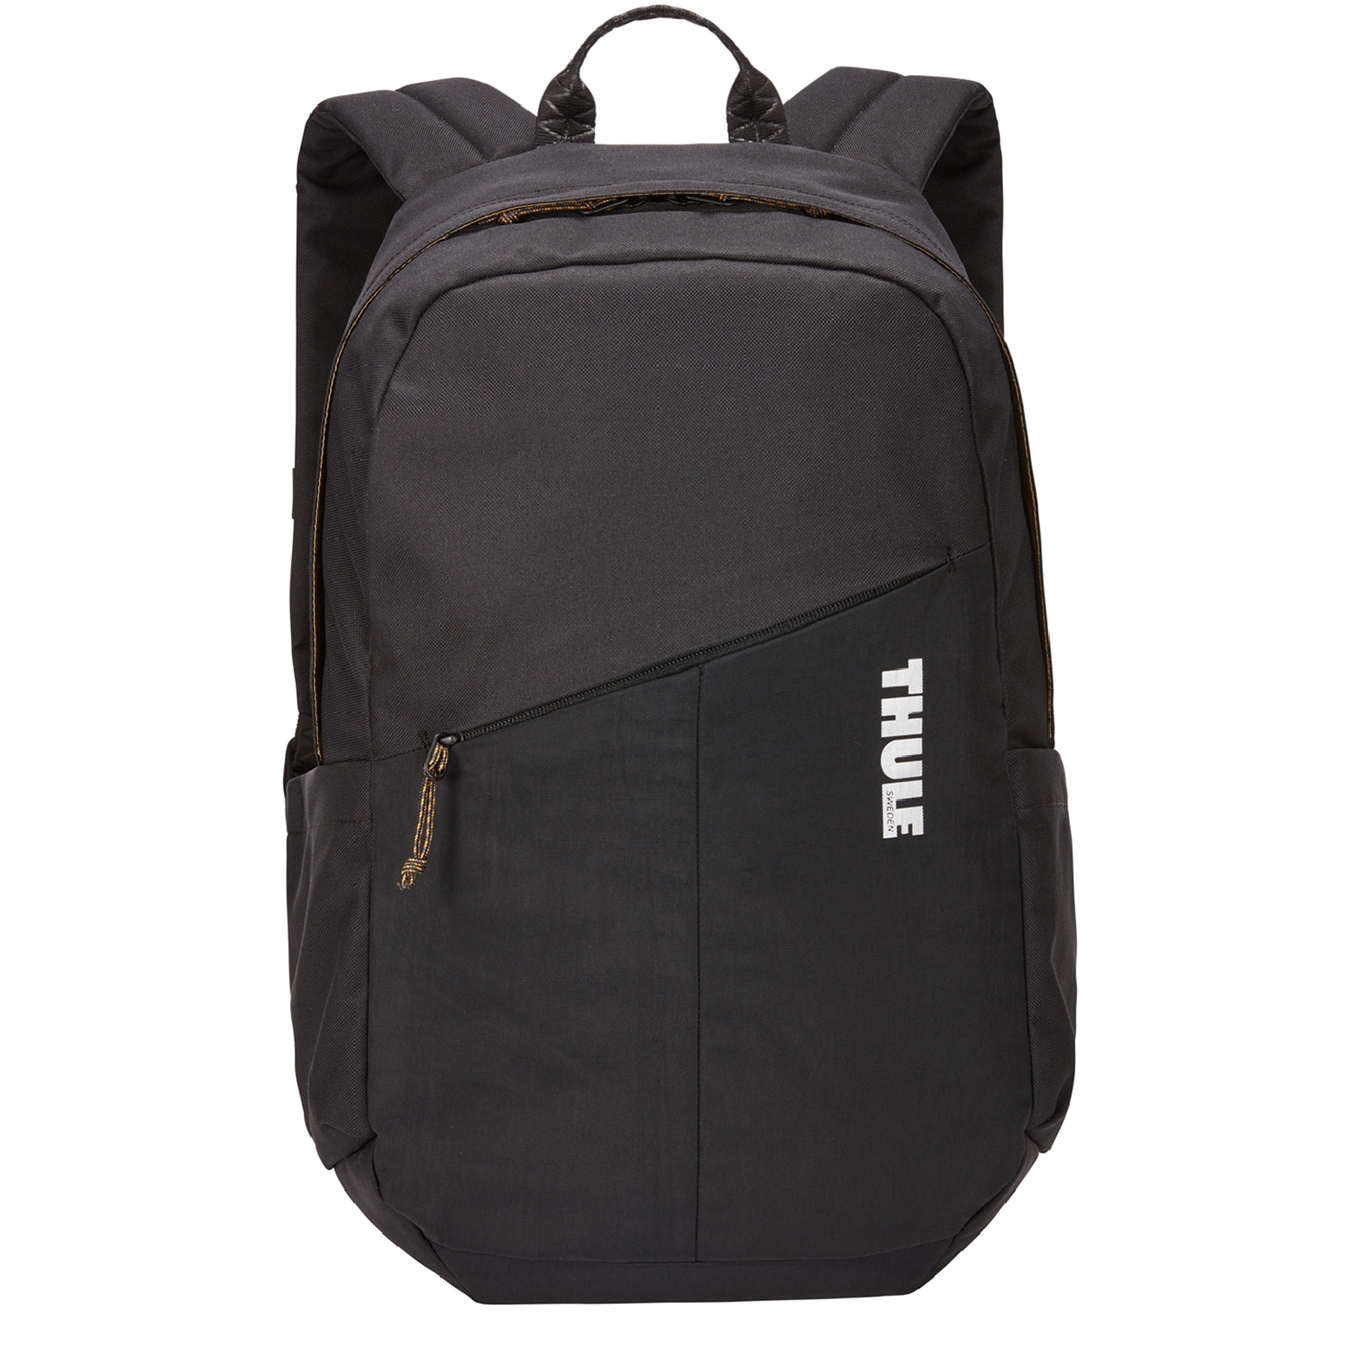 Thule Campus Notus Backpack black backpack